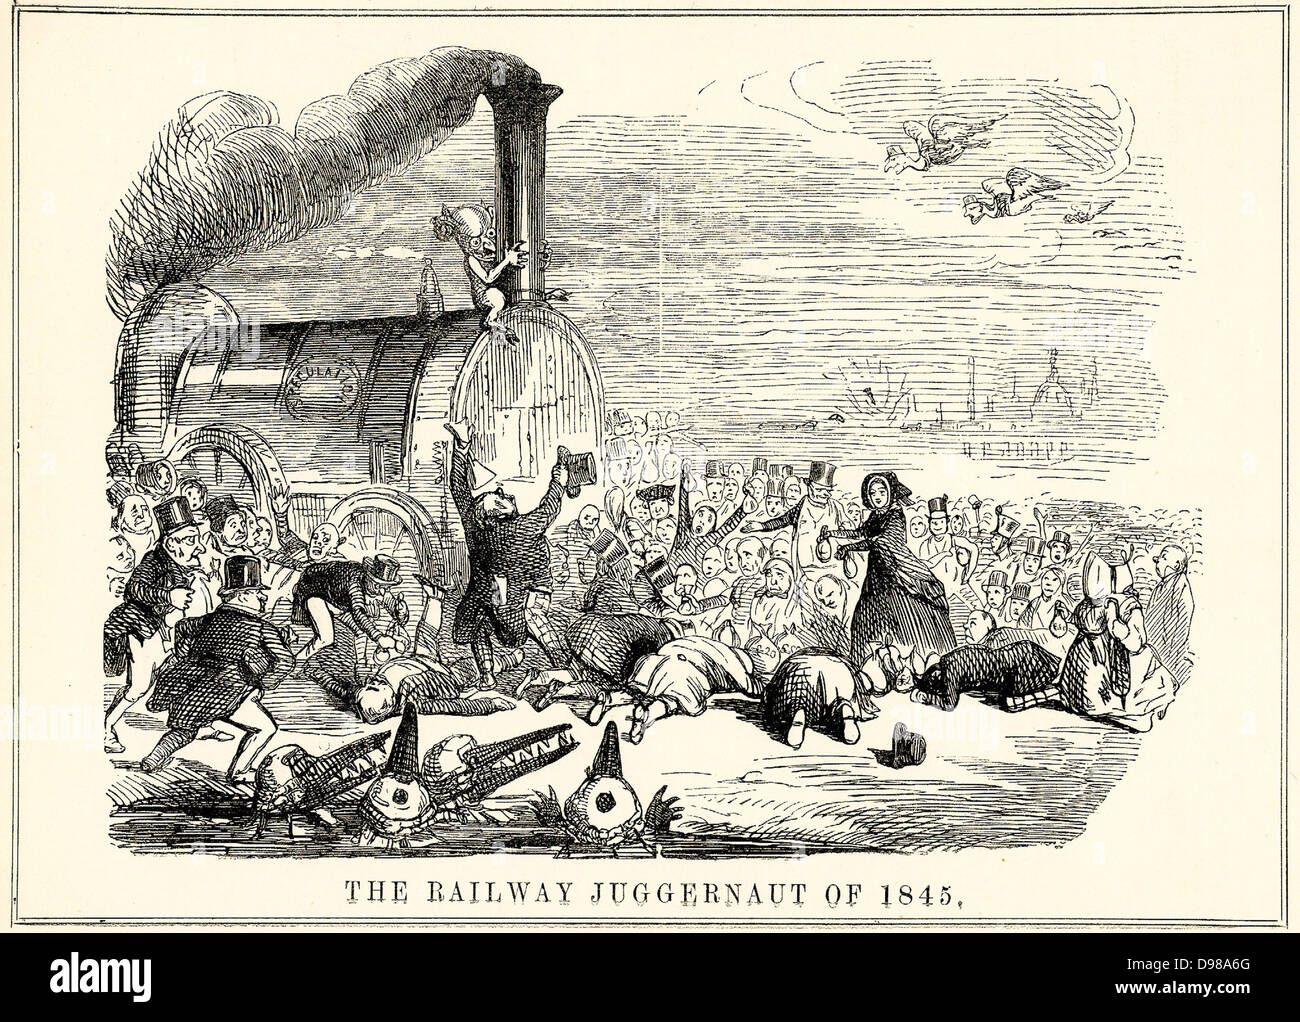 Der Moloch von 1845': Eisenbahn - wütende Investoren fallen vor dem Moloch der Bahn Spekulation. Cartoon von 'Lochen', London, 1845. Stockfoto